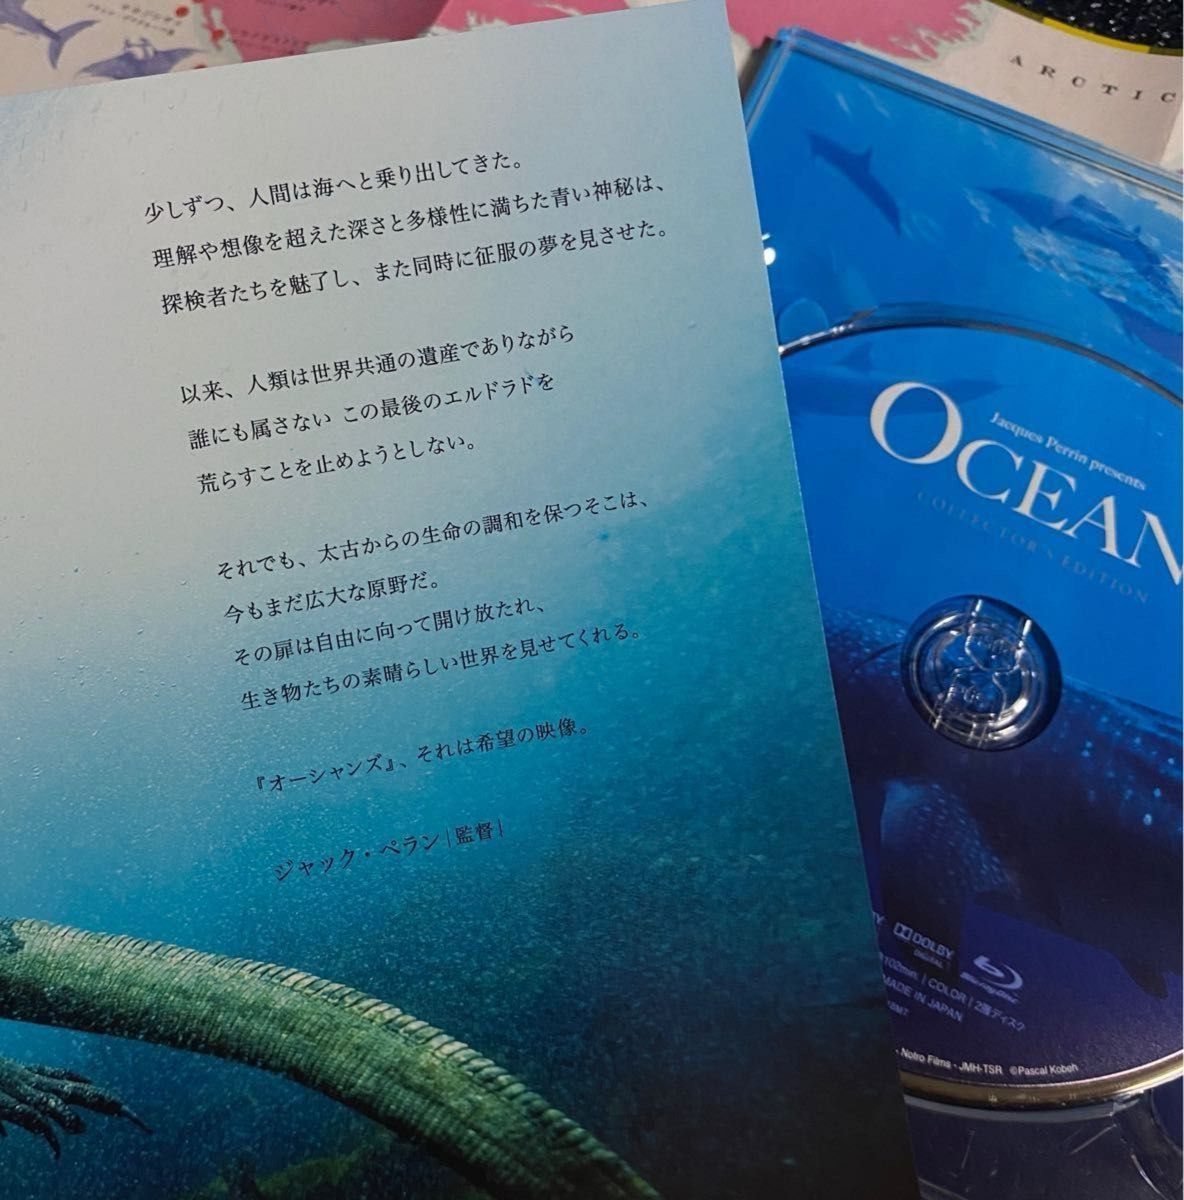 OCEANS -オーシャンズ- 大自然大海原の人間の知らない未知な世界  話題作  再生回数少なめ美品